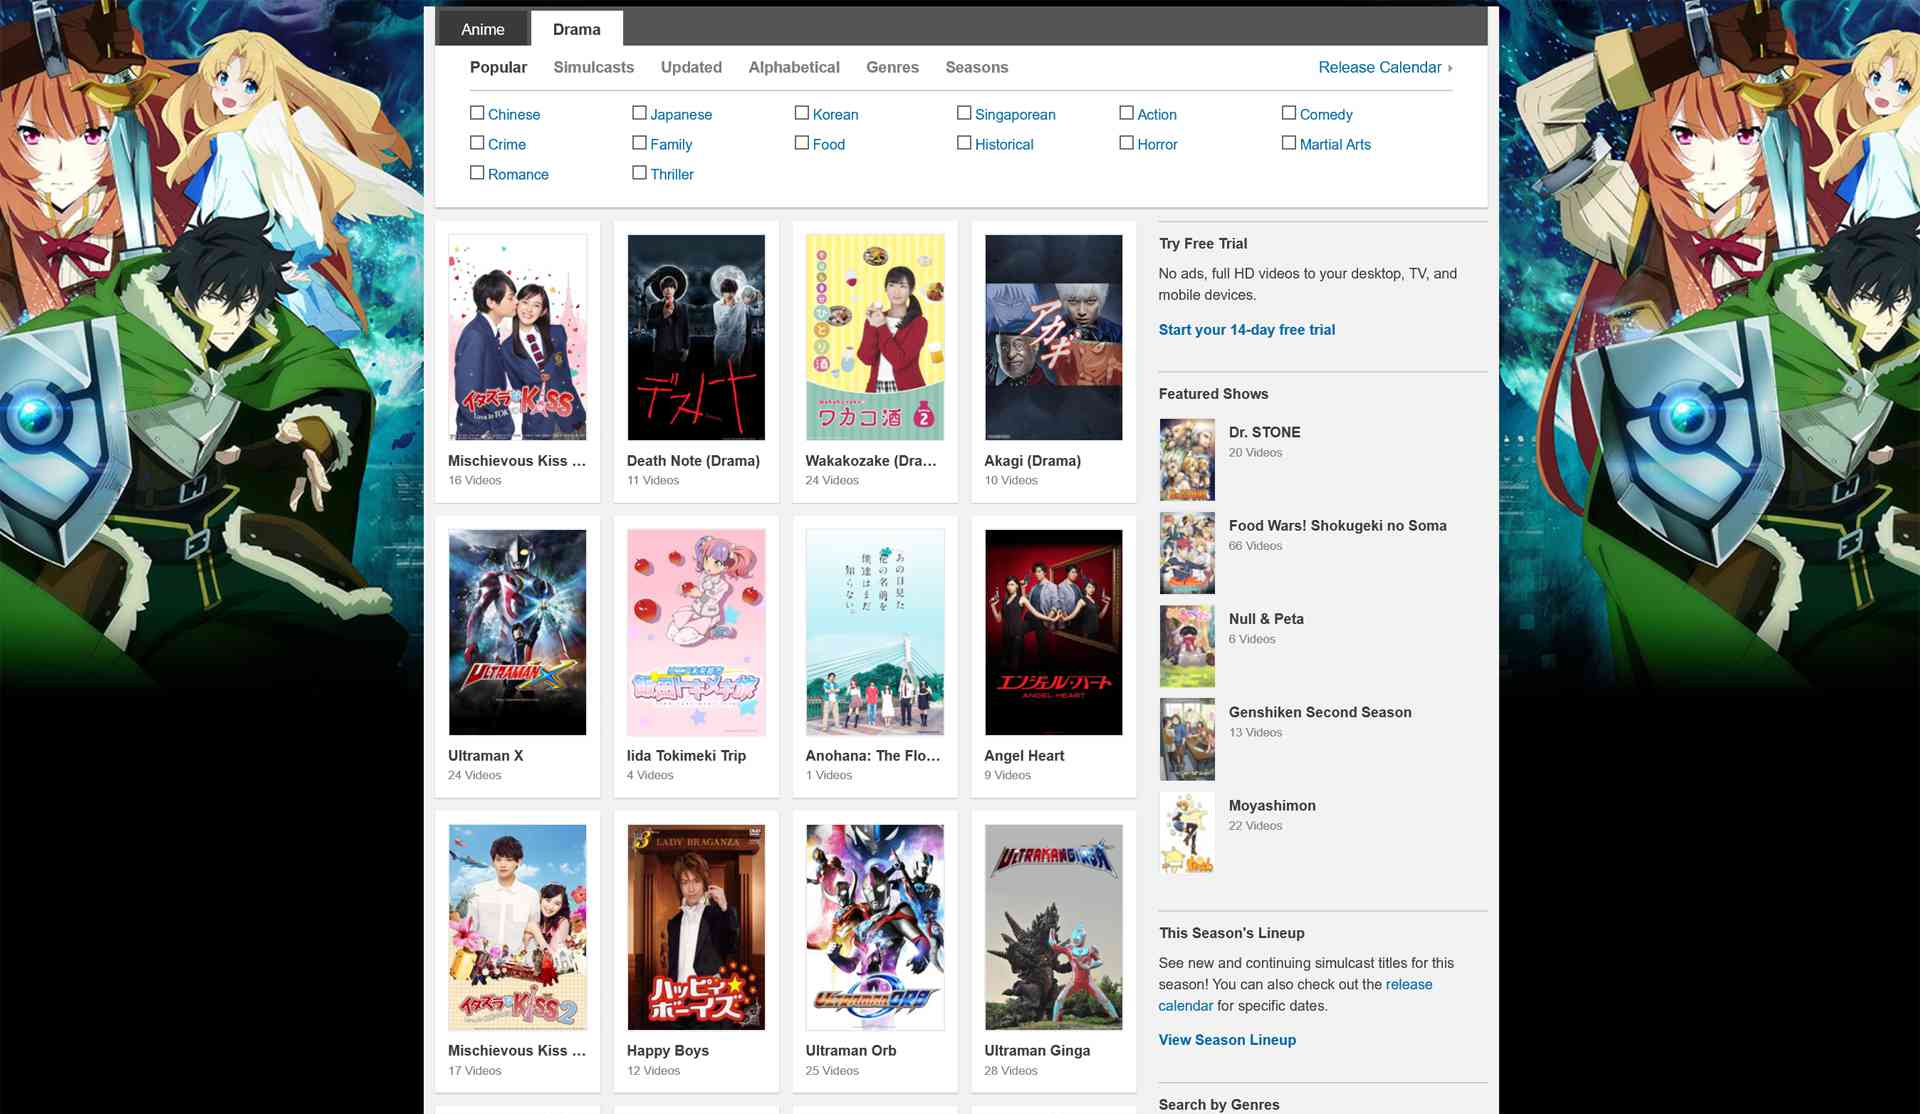 Crunchyrolls webbsida för asiatisk dramaserie.